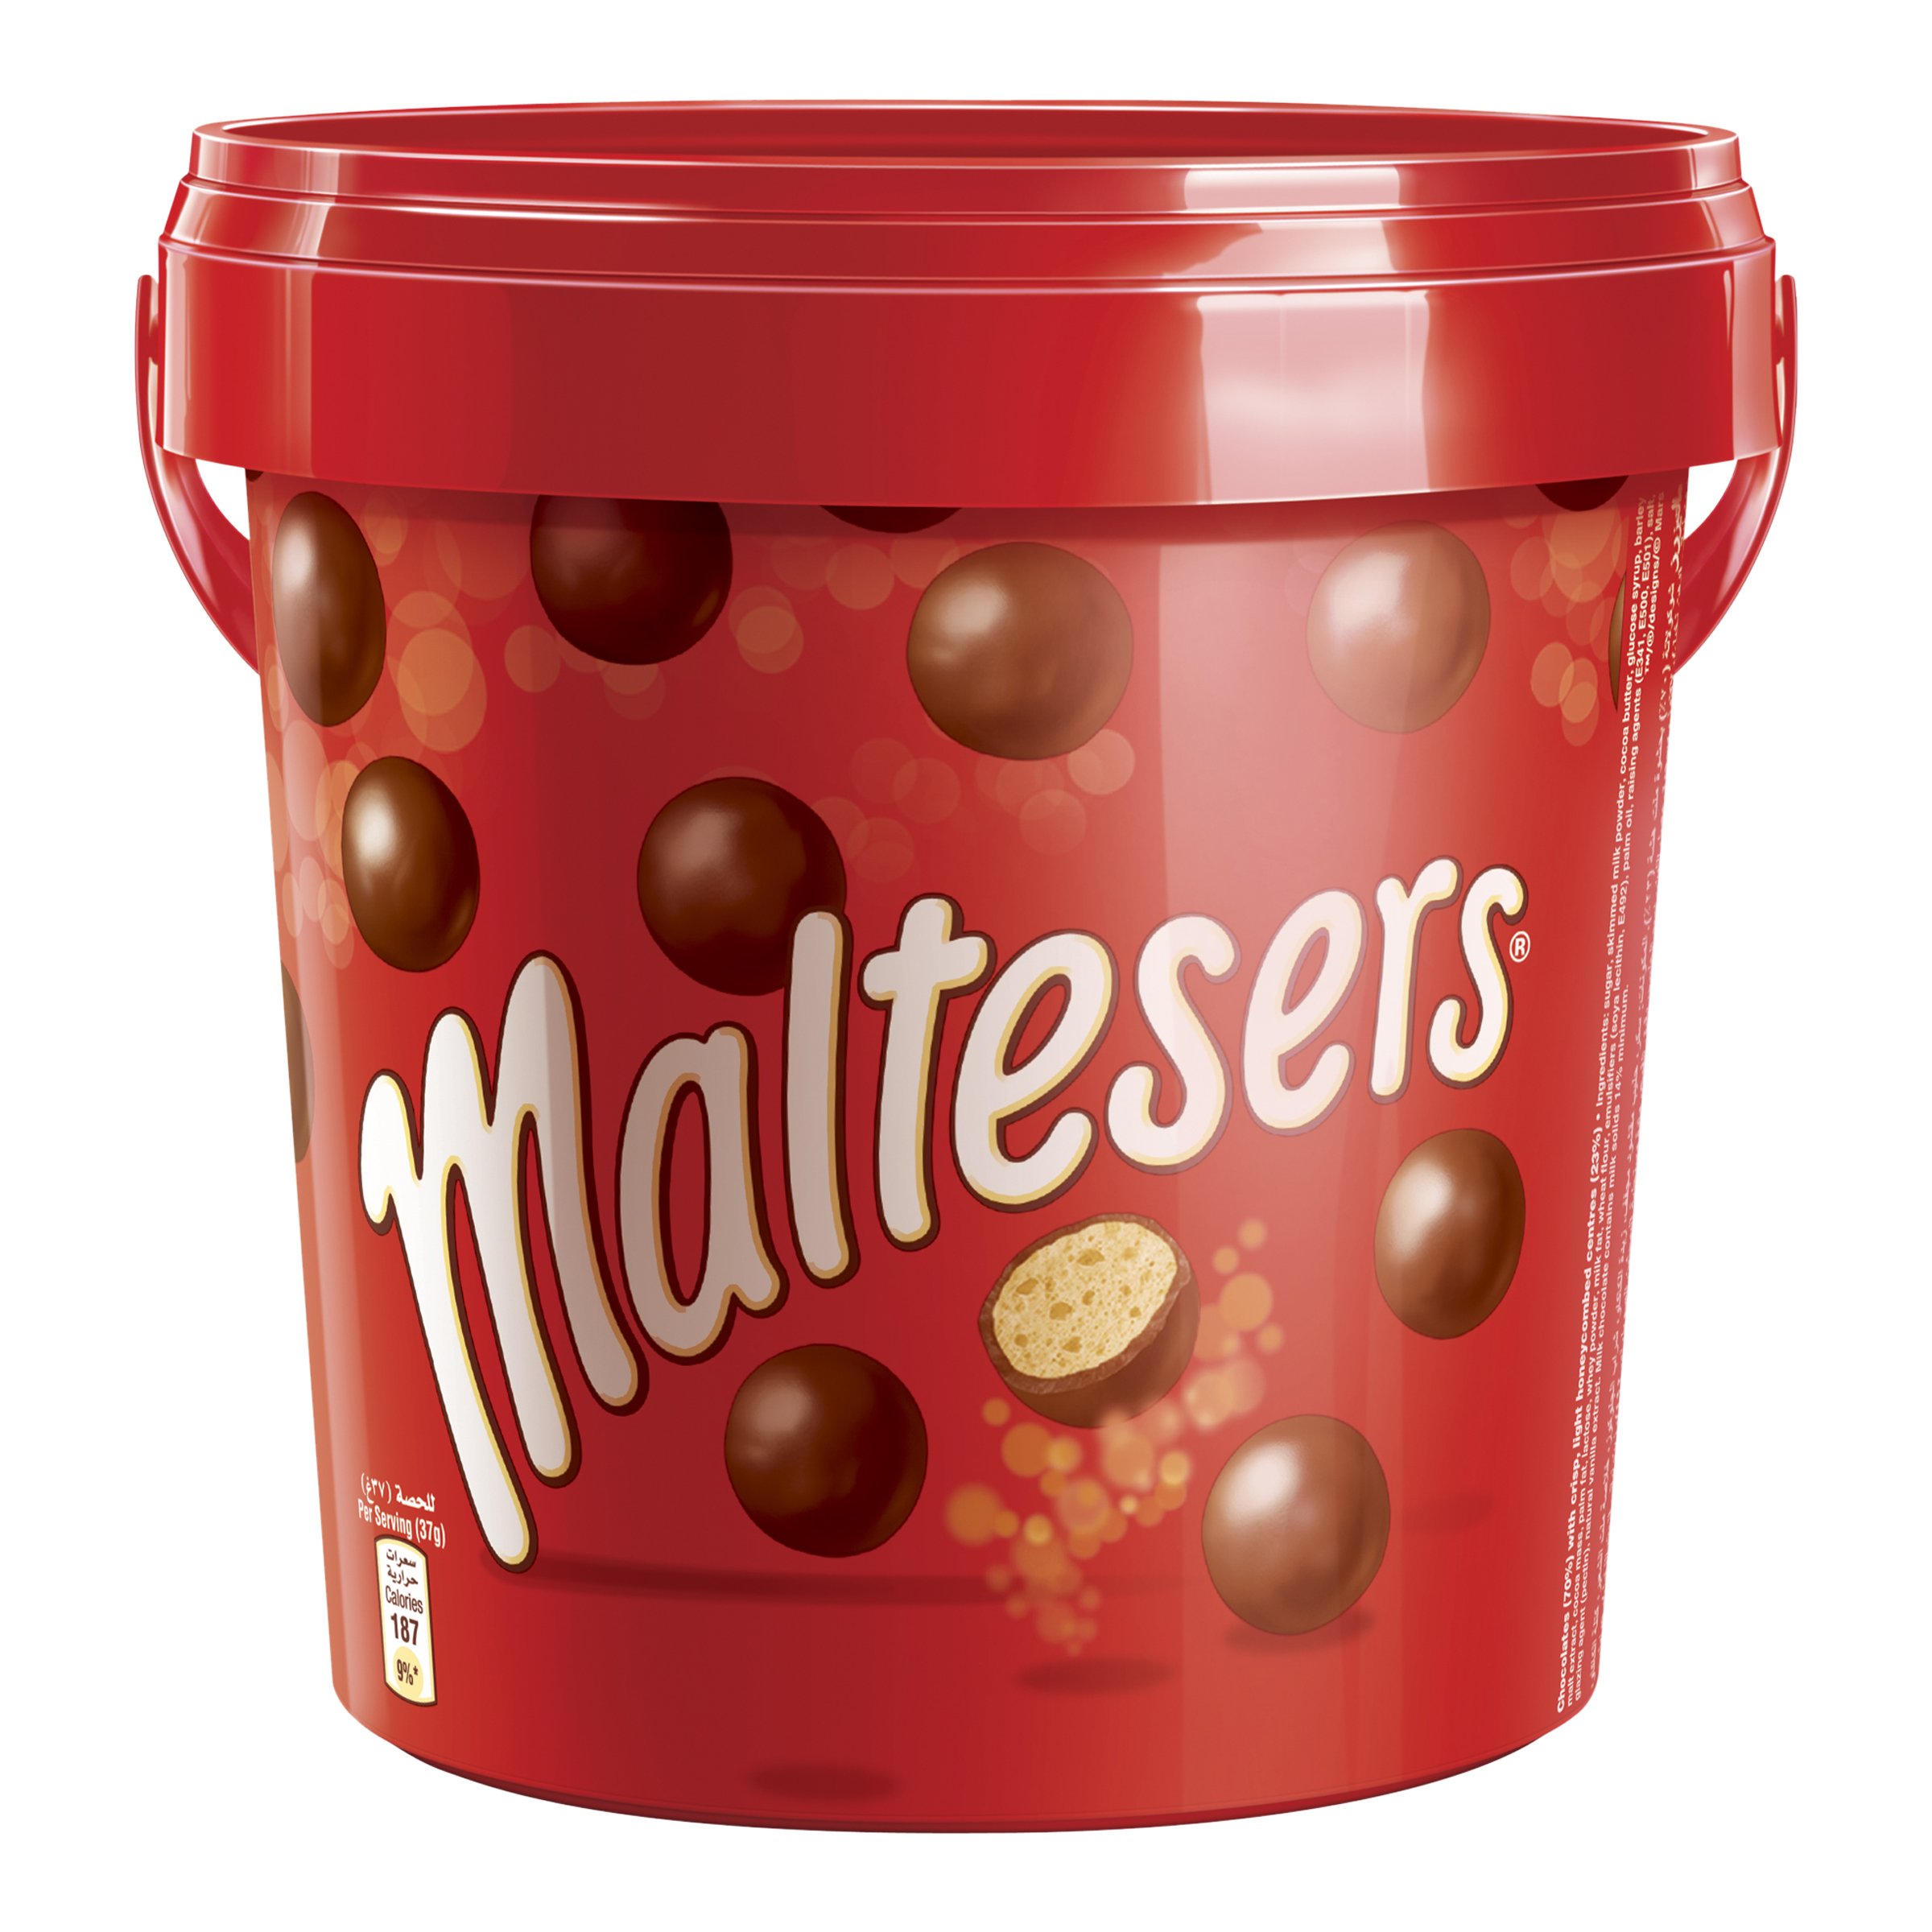 Хрустящие шоколадные шарики. Maltesers шоколадные шарики 37 гр. Конфеты шоколадные шарики Мальтизерс. Maltesers драже шоколадные шарики. Конфеты Mars Maltesers.